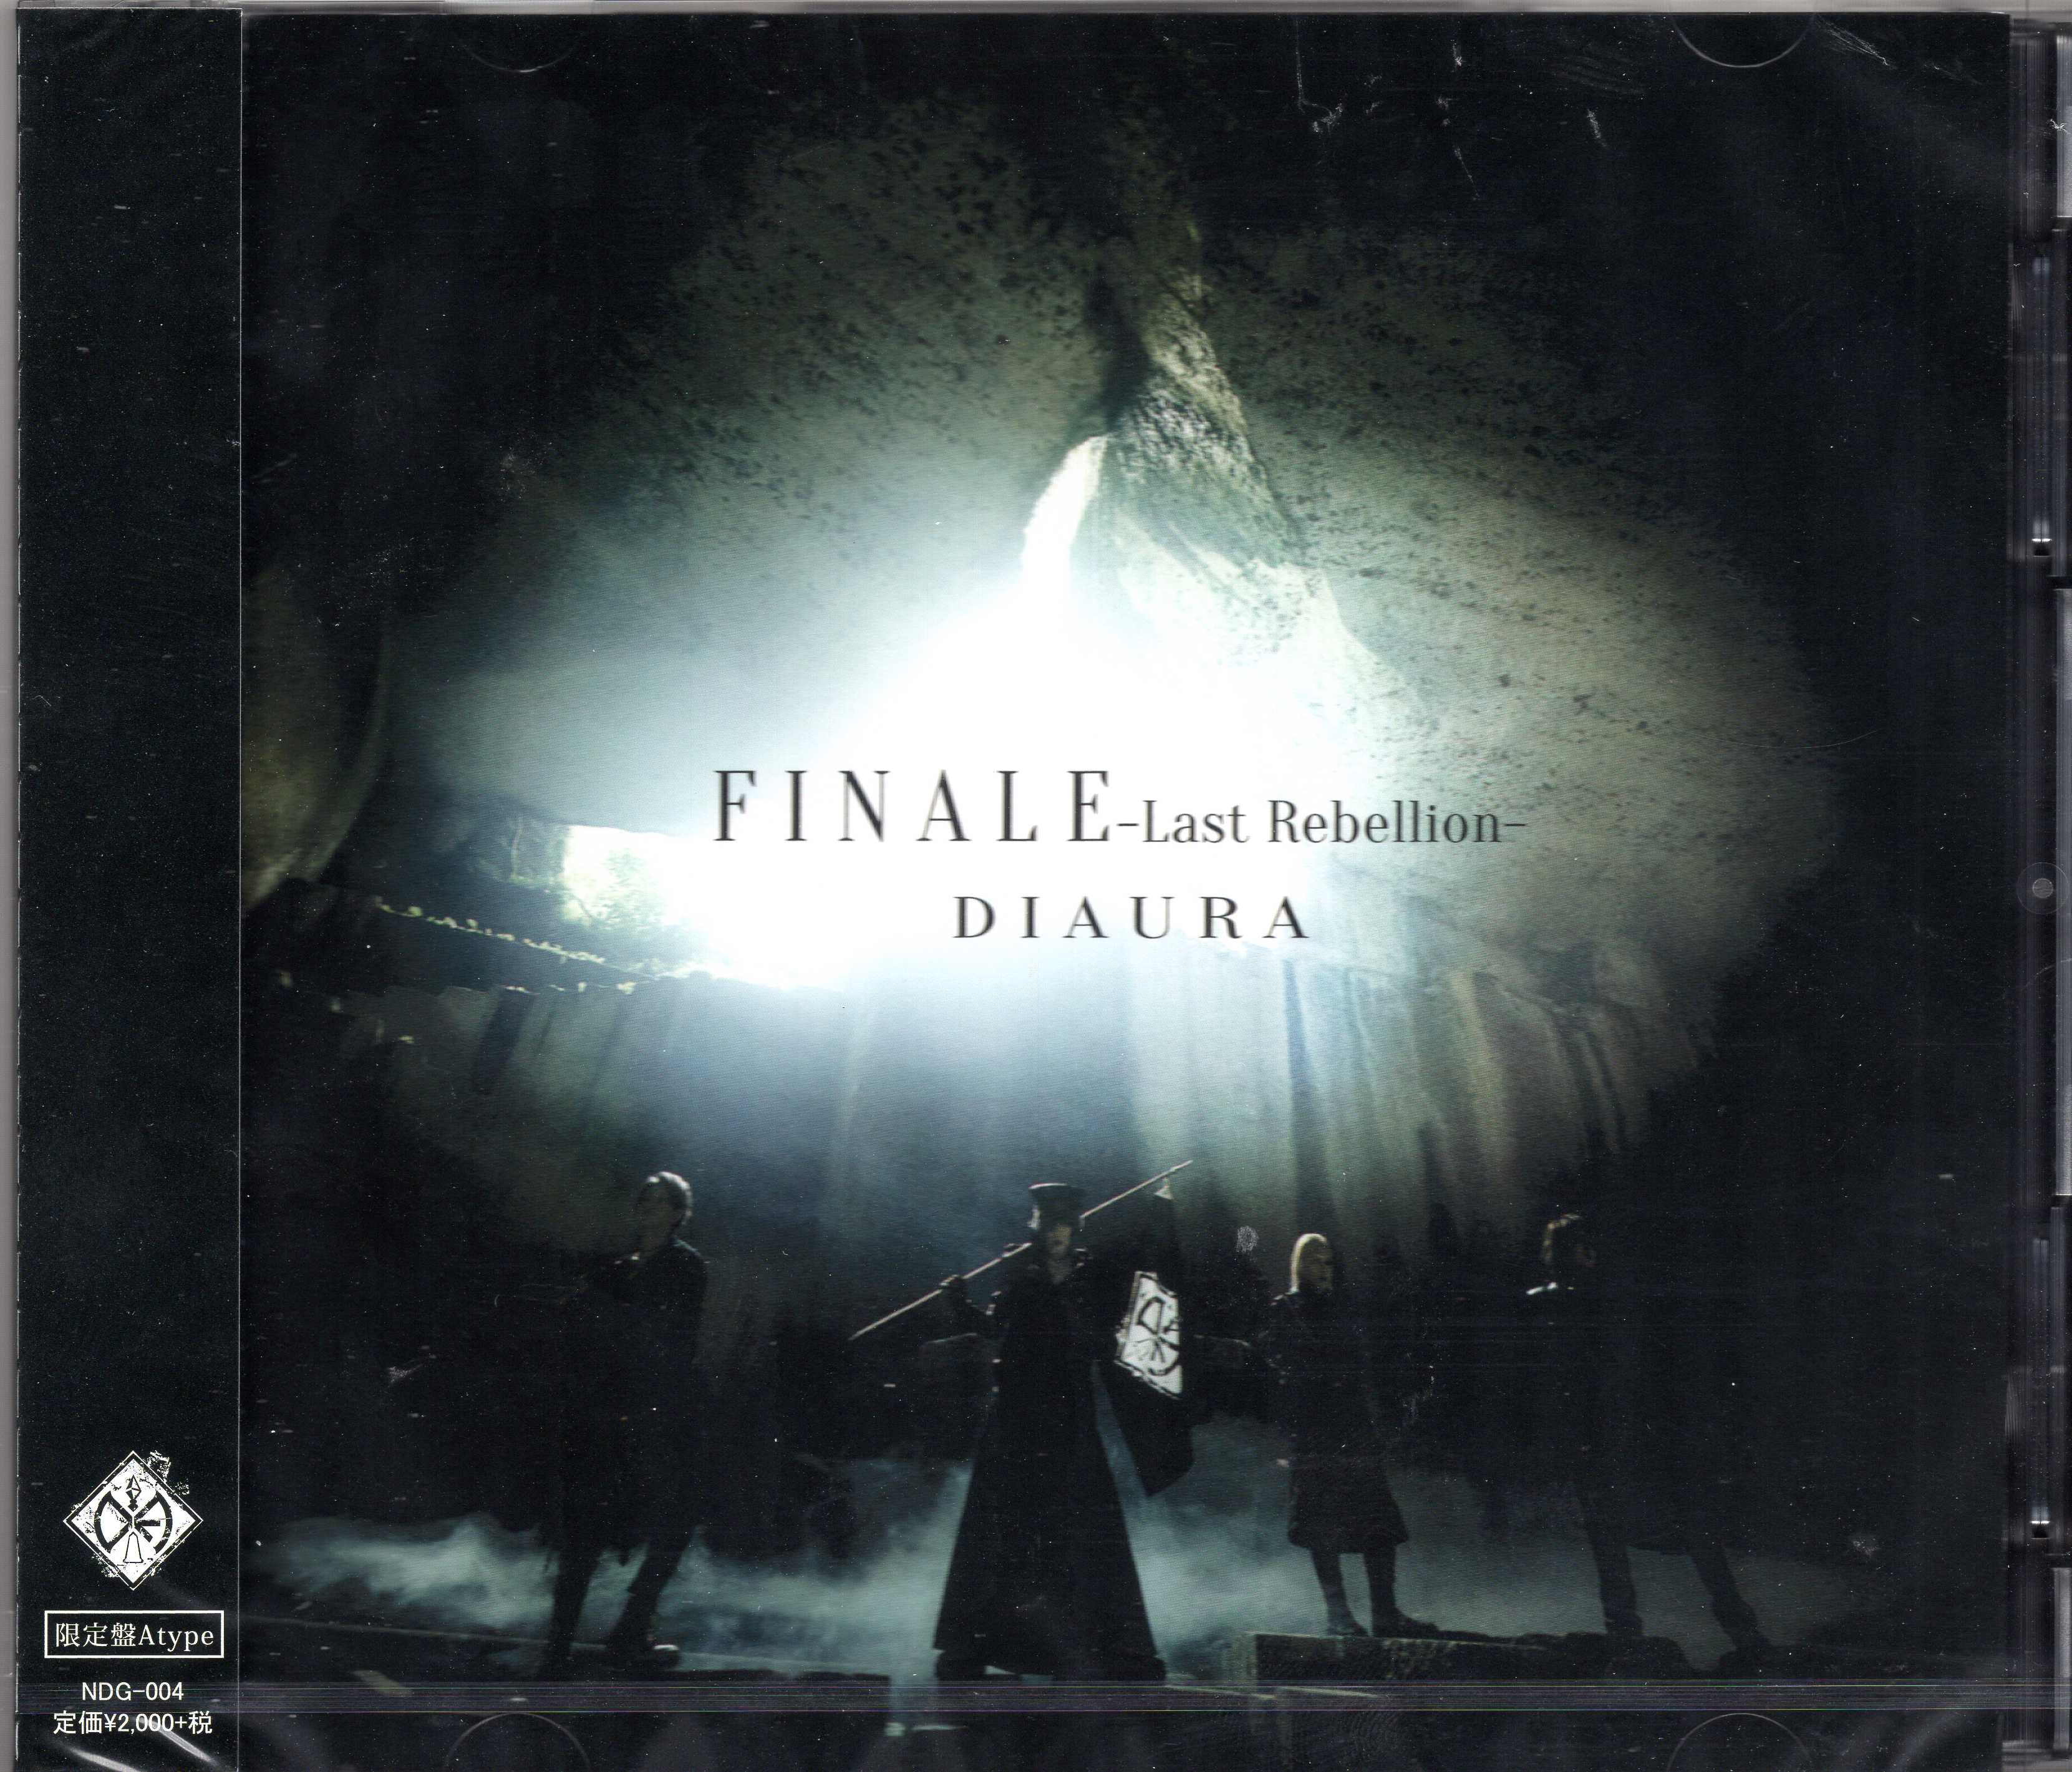 DIAURA ( ディオーラ )  の CD 【A Type】FINALE-Last Rebellion-